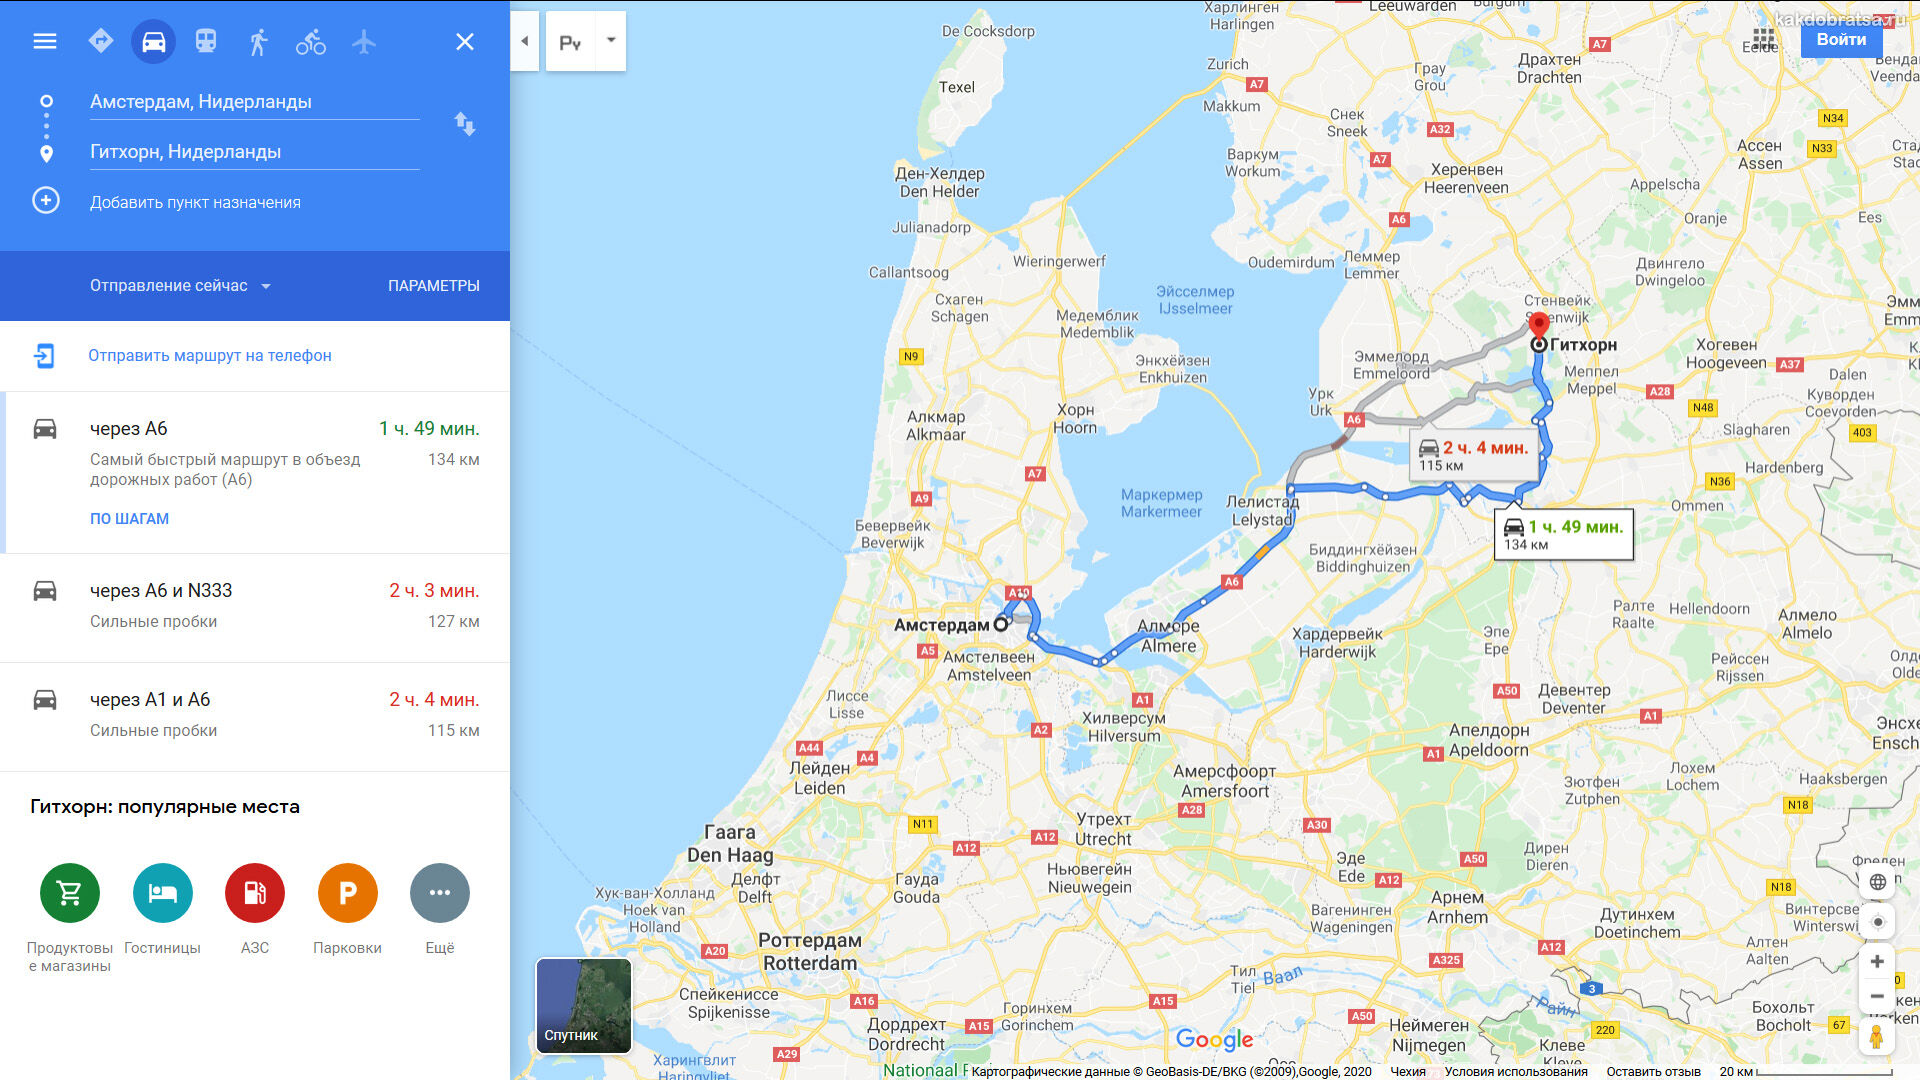 Амстердама Гитхорн расстояние и время в пути по карте